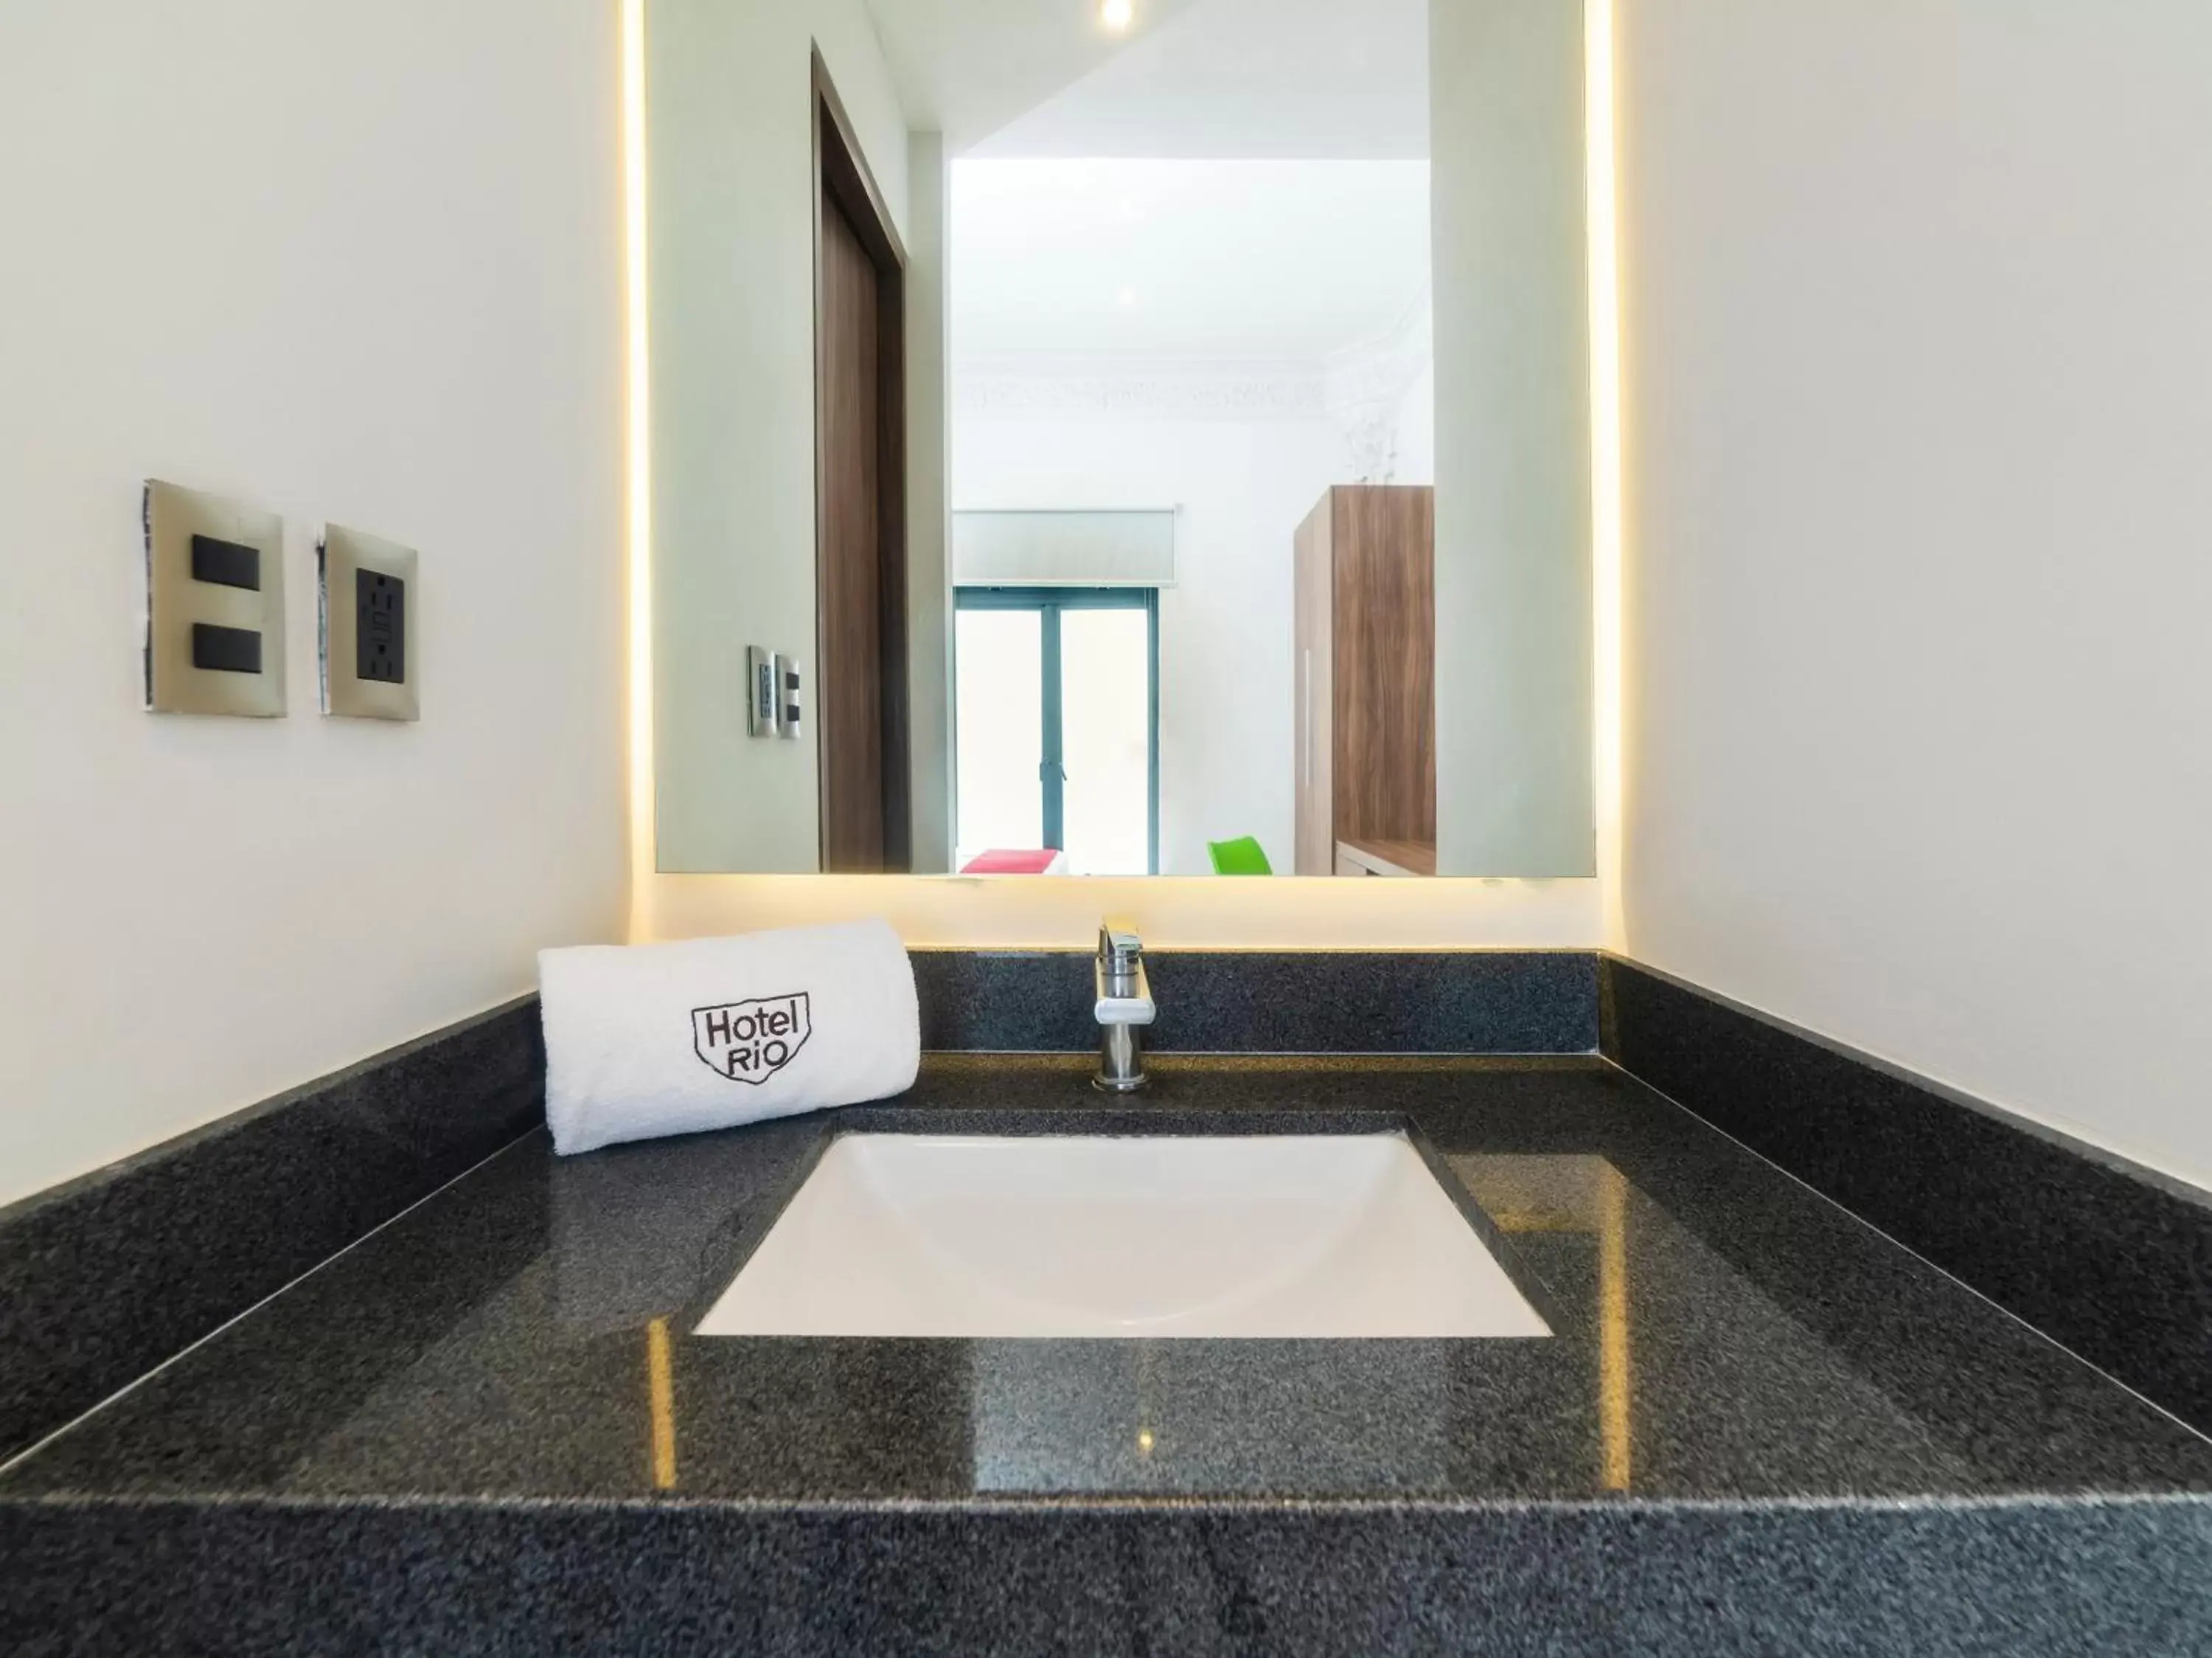 Toilet, Bathroom in Hotel Río